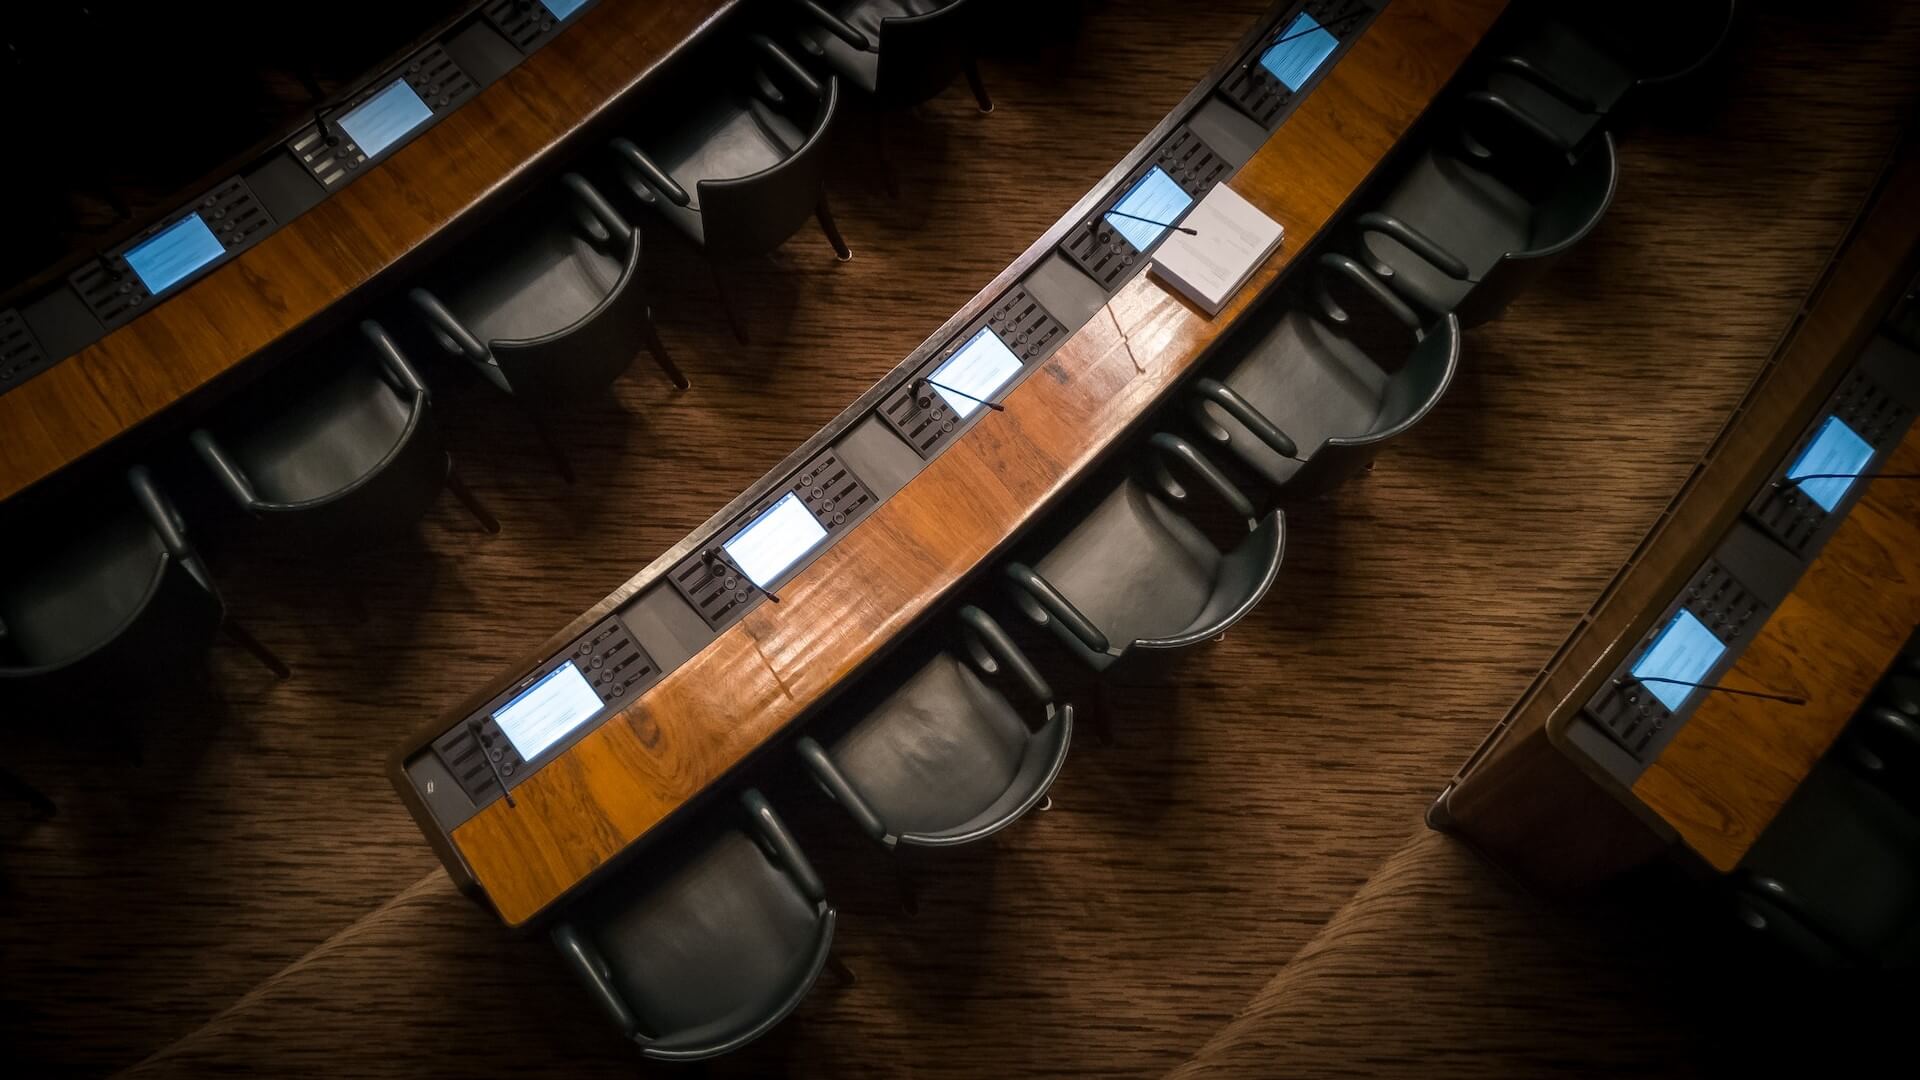 Disposição dos lugares numa sala do Parlamento, equipada com microfones e ecrãs para debates e apresentações.